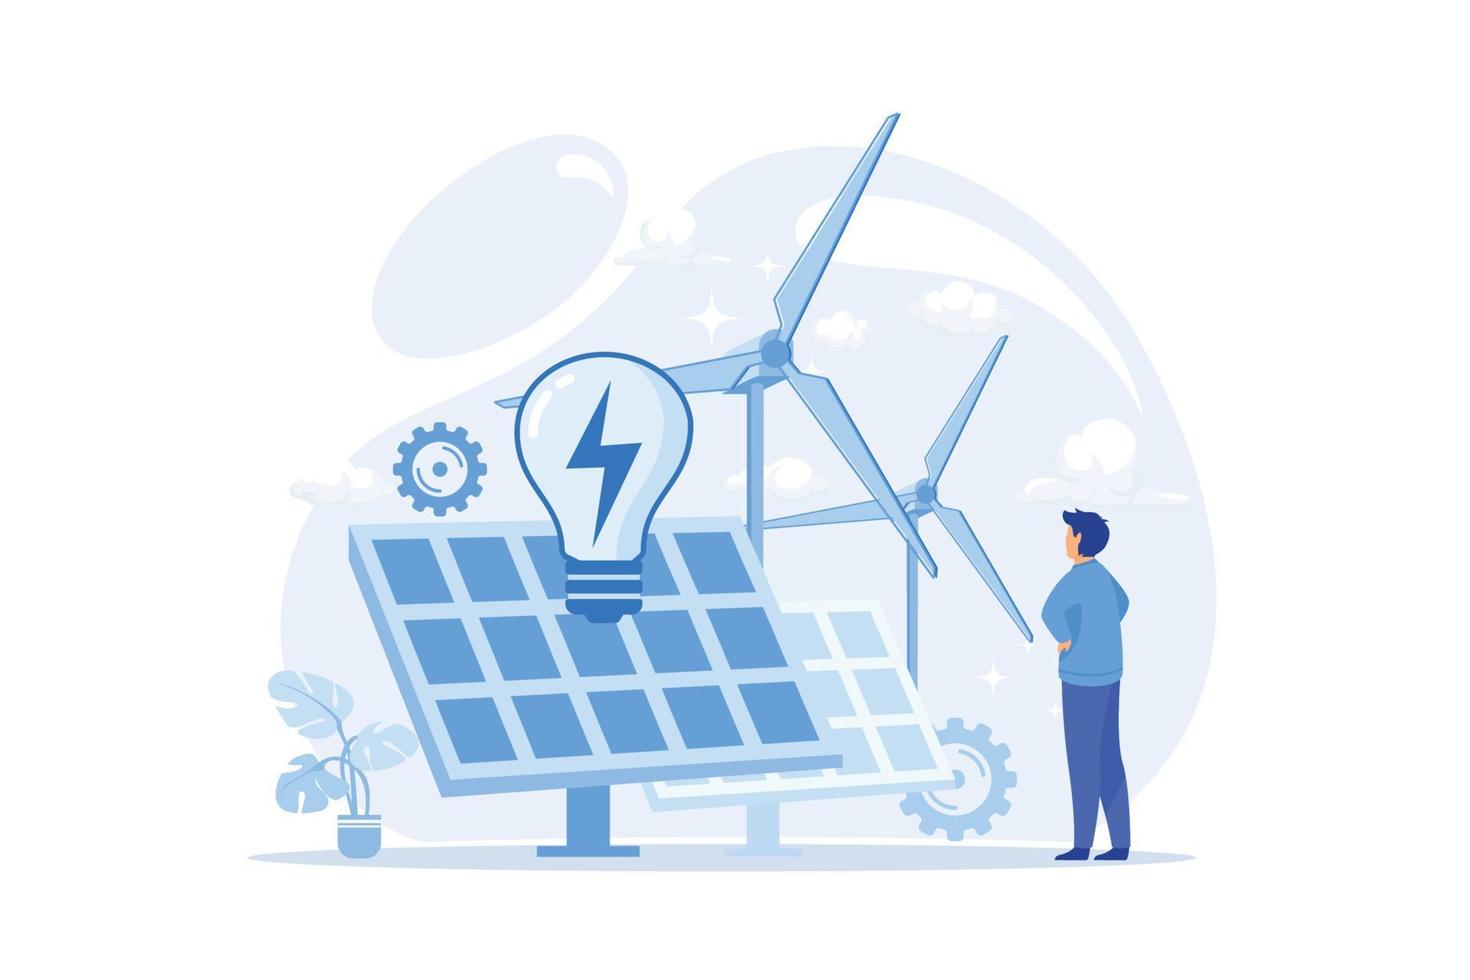 alternativa energia verde alternativa energia tecnologie, eco amichevole, nucleare, rinnovabile fonti, solare pannelli, vento turbina, energia idroelettrica piatto design moderno illustrazione vettore